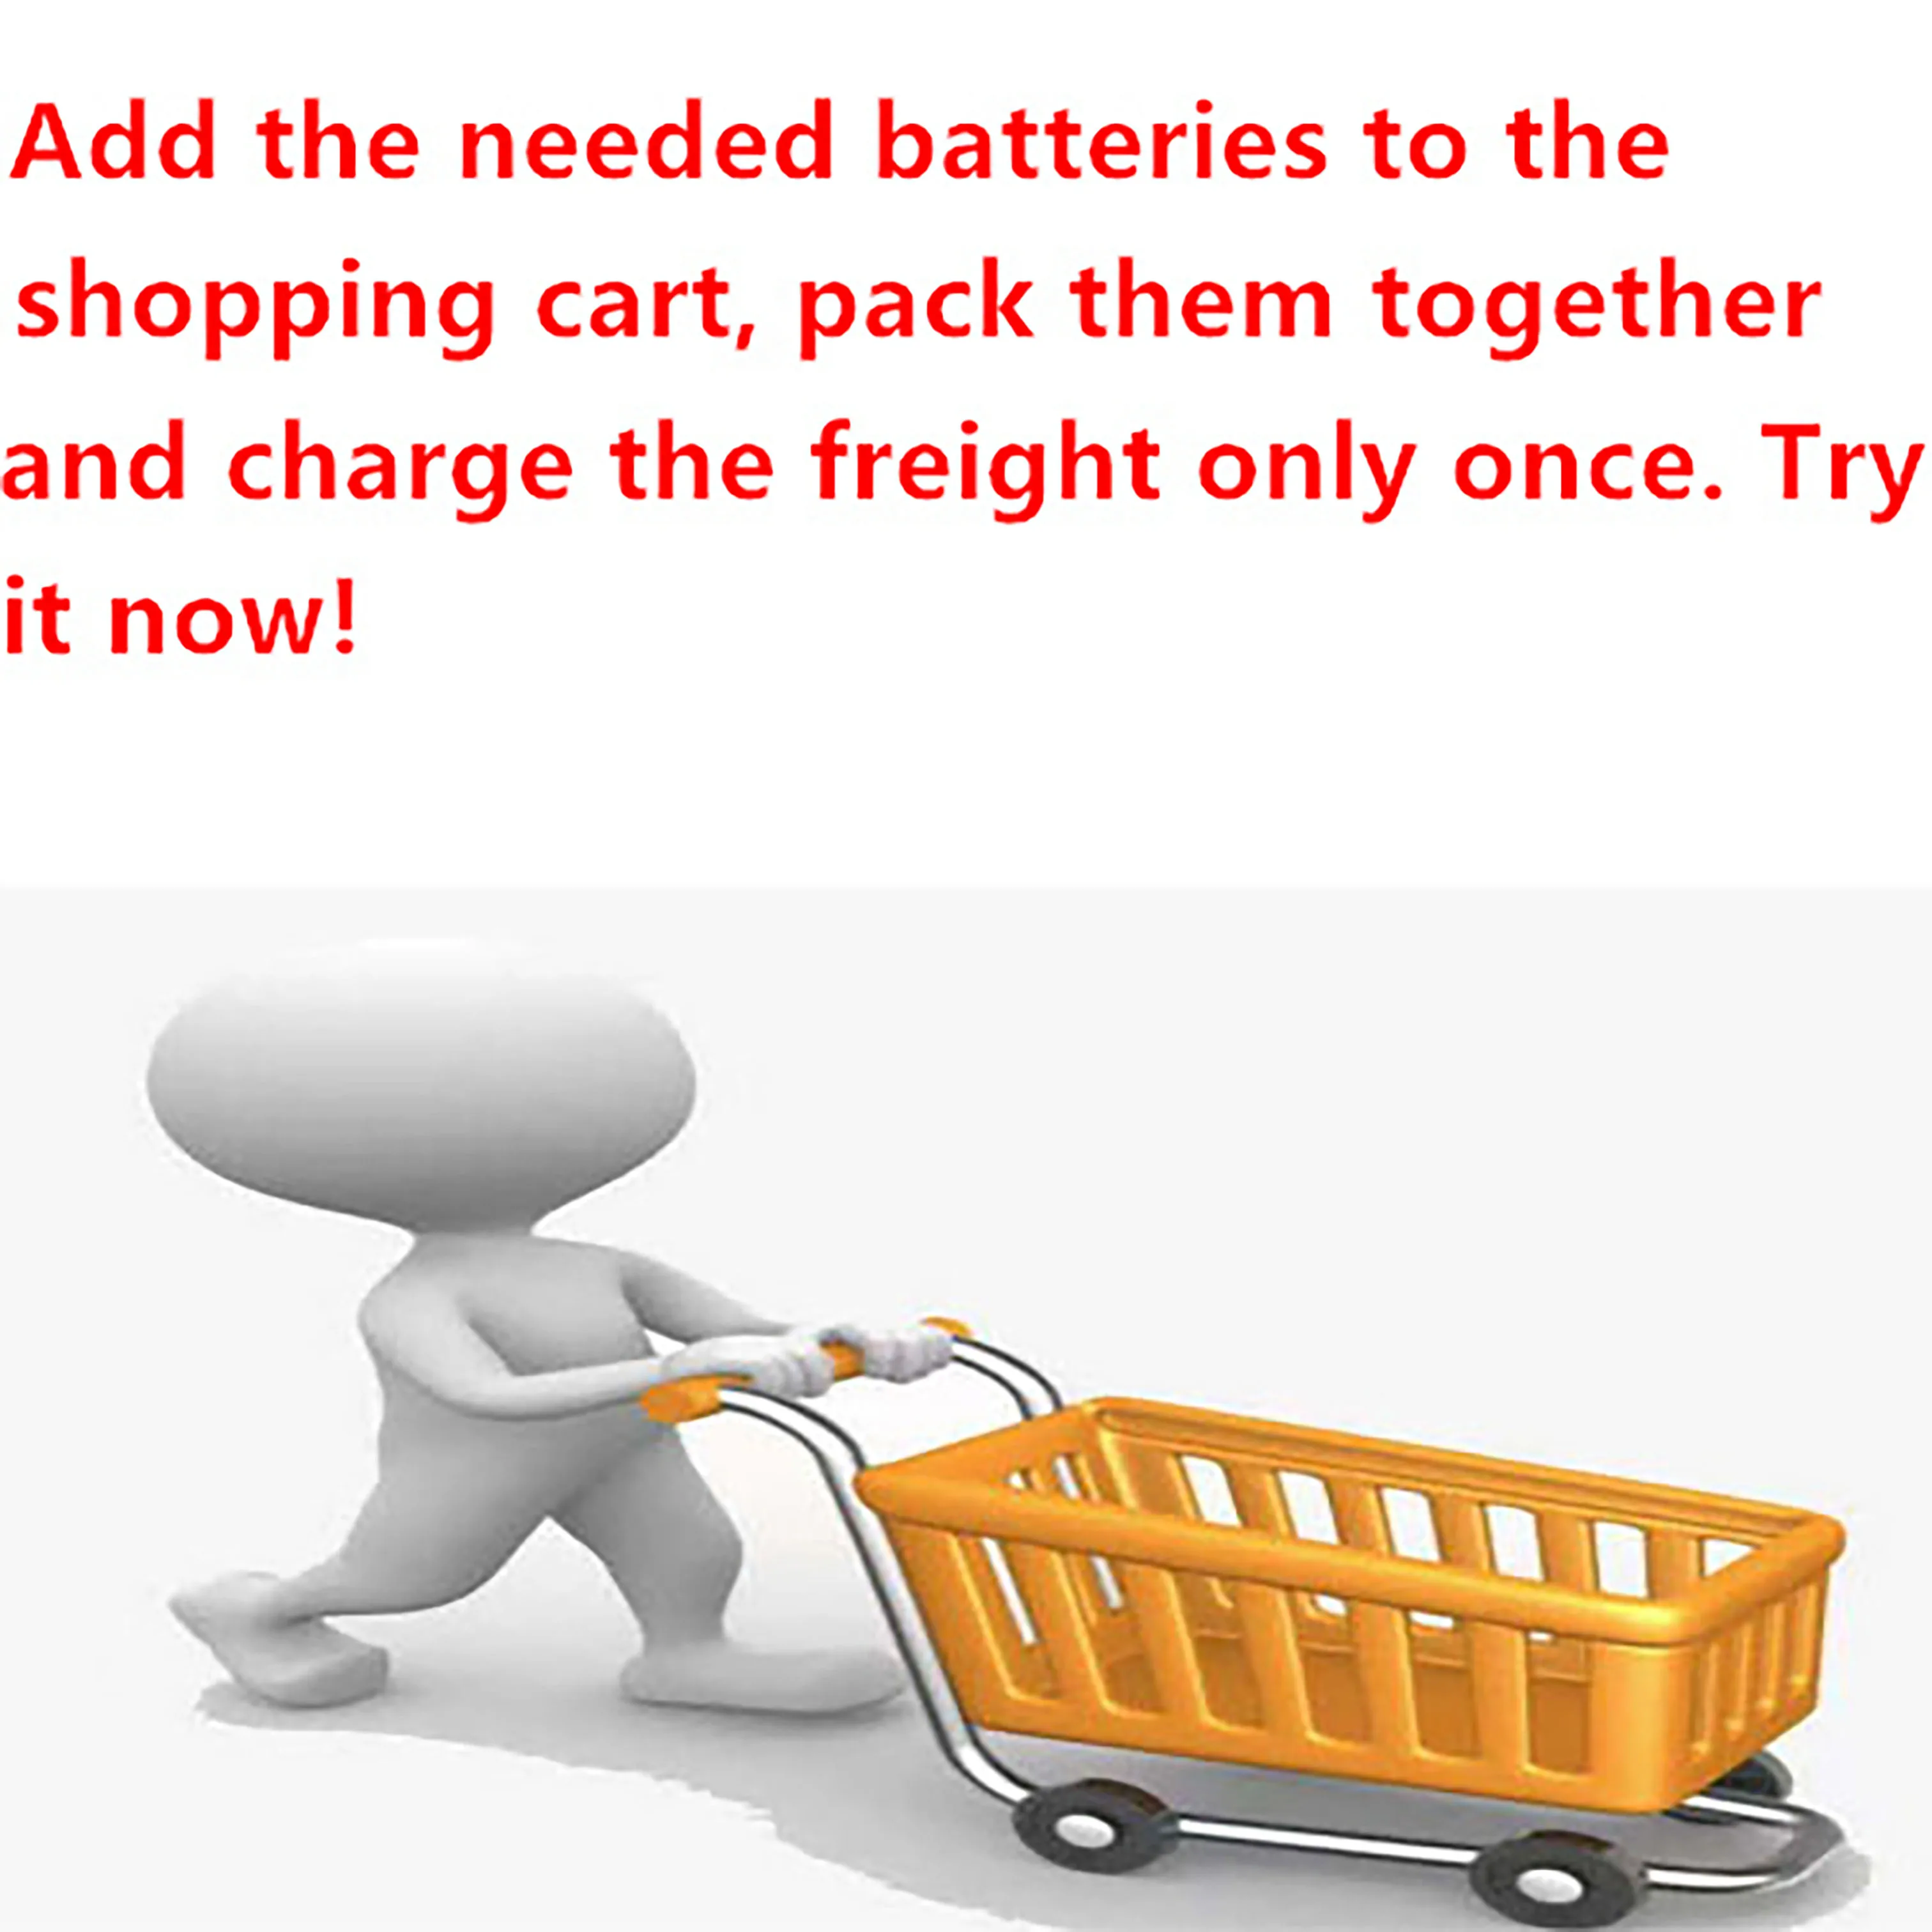 купите еще дешевле сертифицированную UL батарею для bluetooth-гарнитуры 102050 полимерно-литиевая батарея 1000 мАч для косметического устройства K Gobo battery Изображение 4